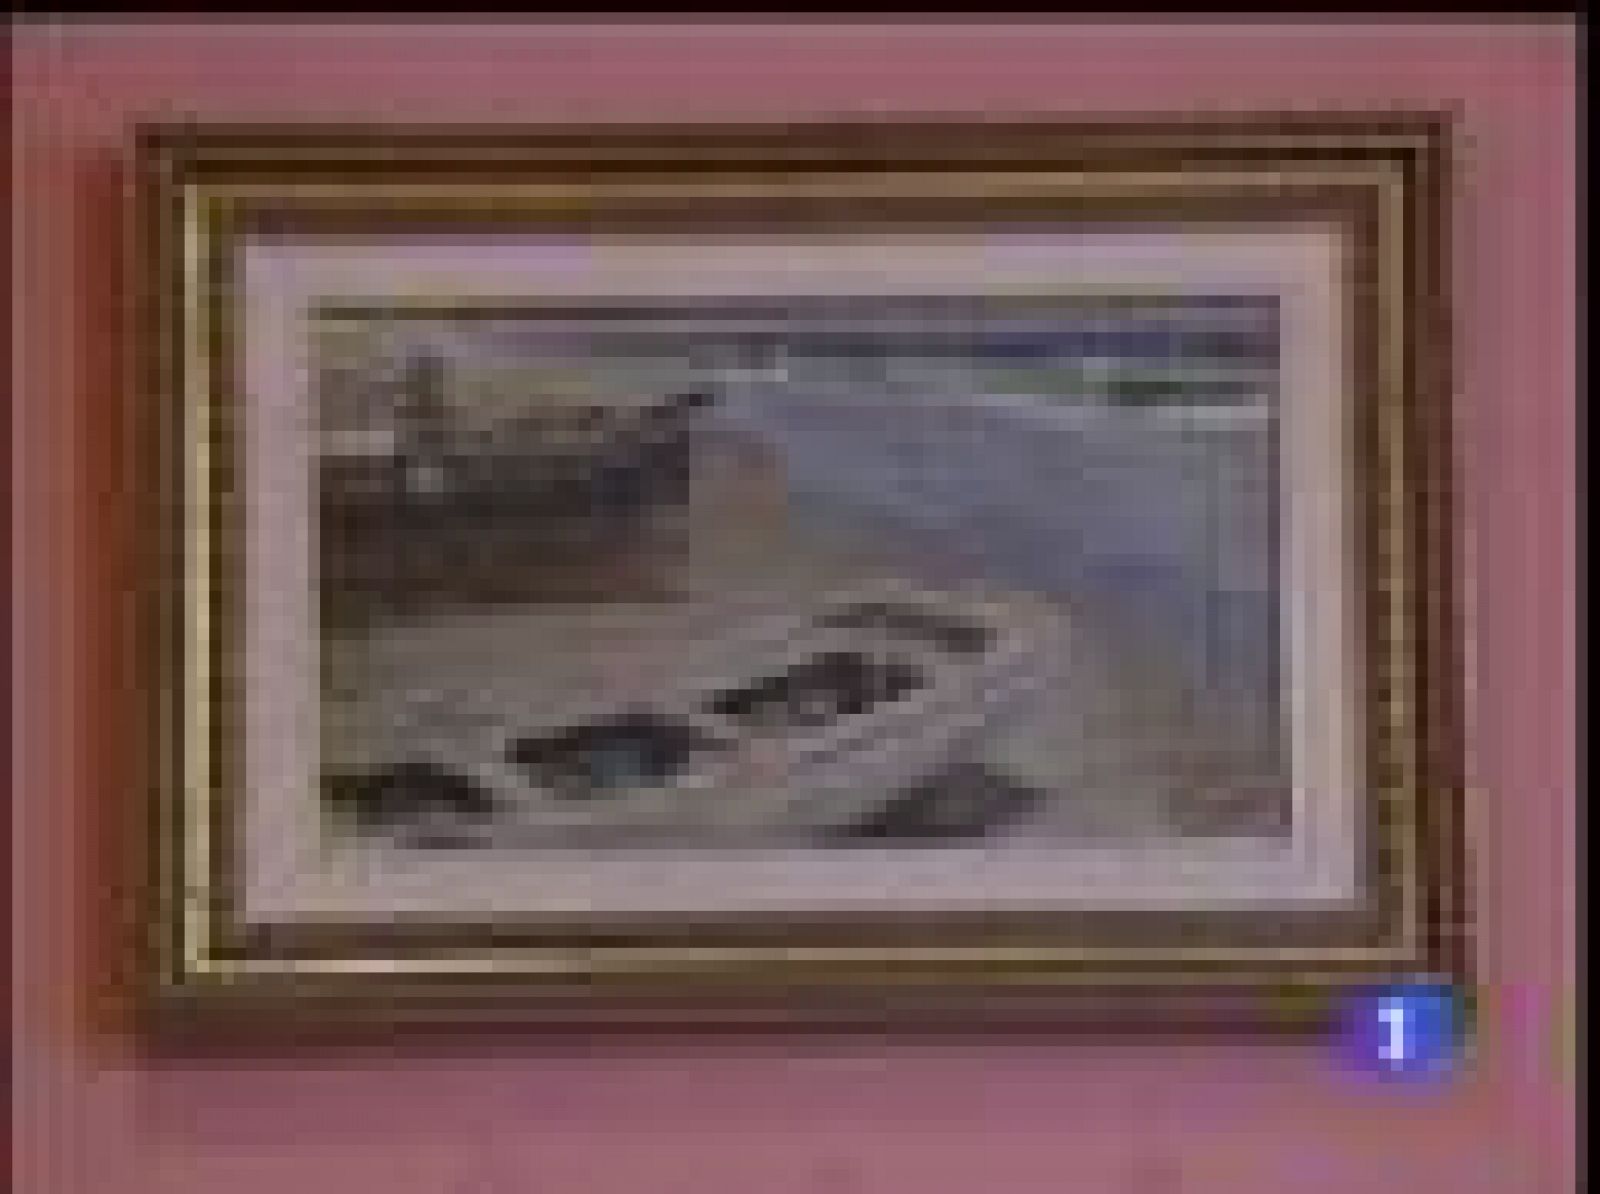 Desaparece una pintura de Sorolla en la Casa Museo Benlliure. Los vigilantes se dieron cuenta este viernes (09/04/2010) de su desaparción y comprueban las grabaciones del vídeo. (10/04/2010) 